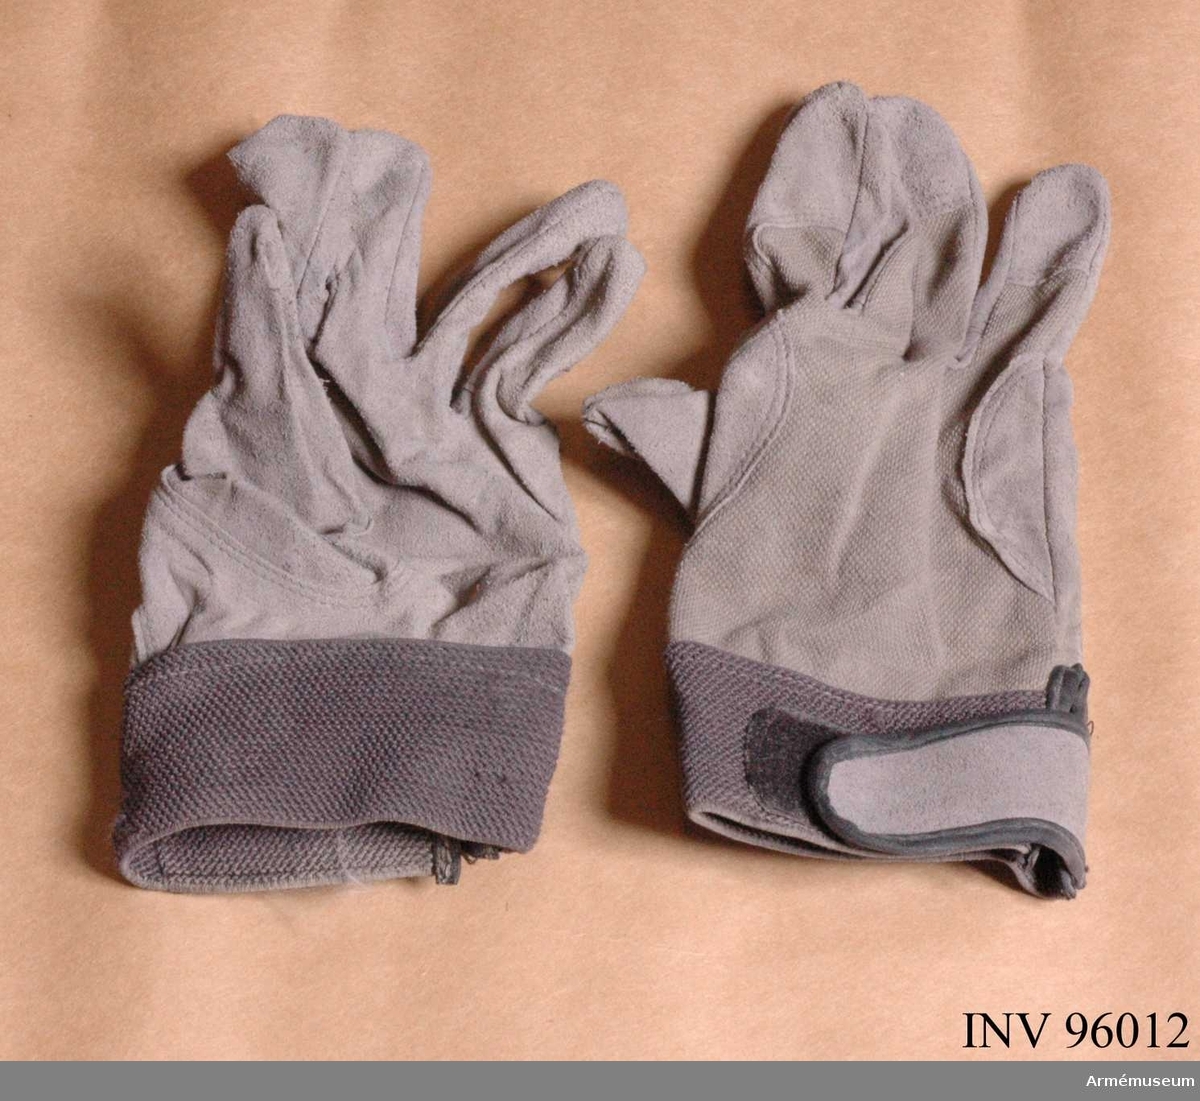 Tunna hanskar i trikå och syntetskinn.
Storlek 8.
Tillverkade 2008 i Kina.
Ligger i väska numer två från höger i kroppsskyddet (AM.096007).